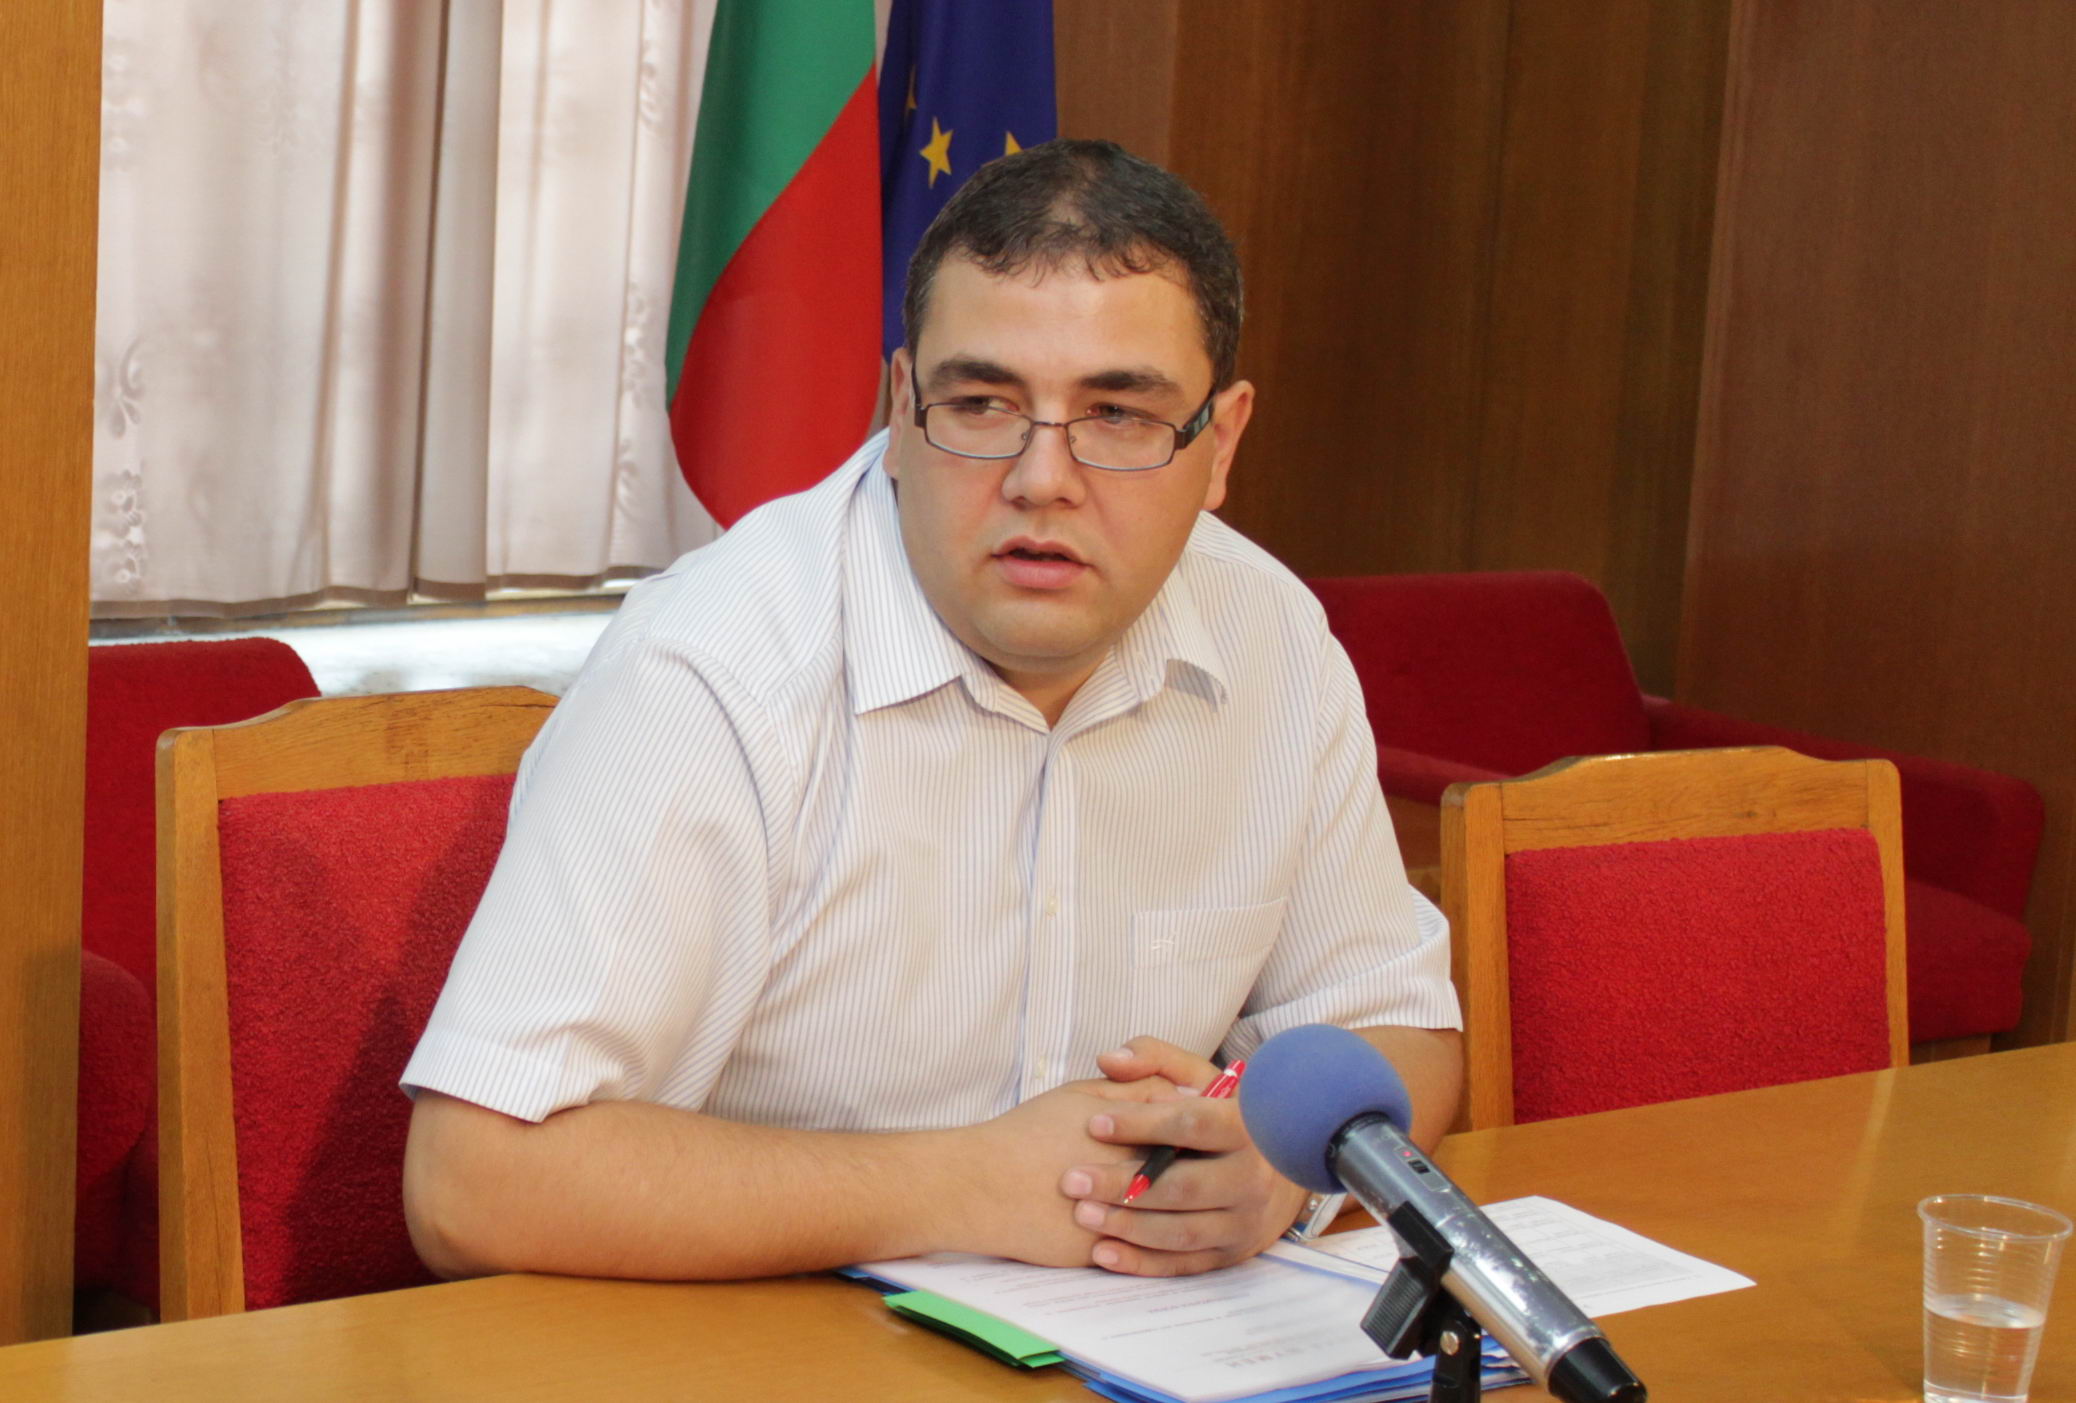 Шефът на отдел ”Европейски проекти” в община Шумен Данаил Данчев също бе арестуван